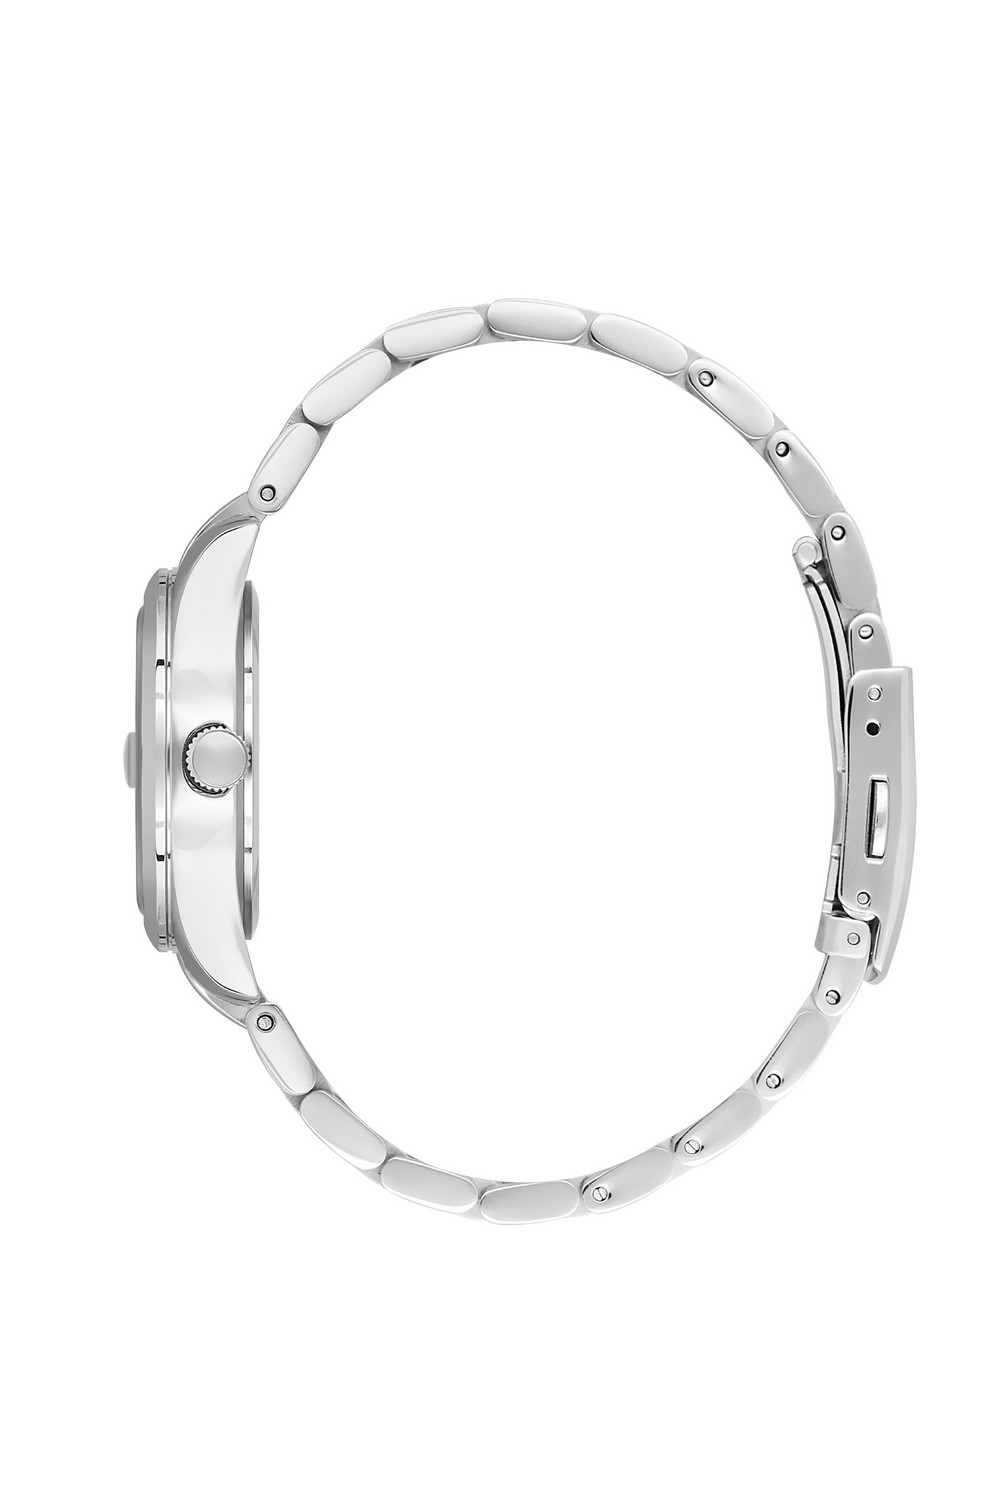 BEVERLY HILLS POLO CLUB  Женские часы, кварцевый механизм, сталь, 32 мм